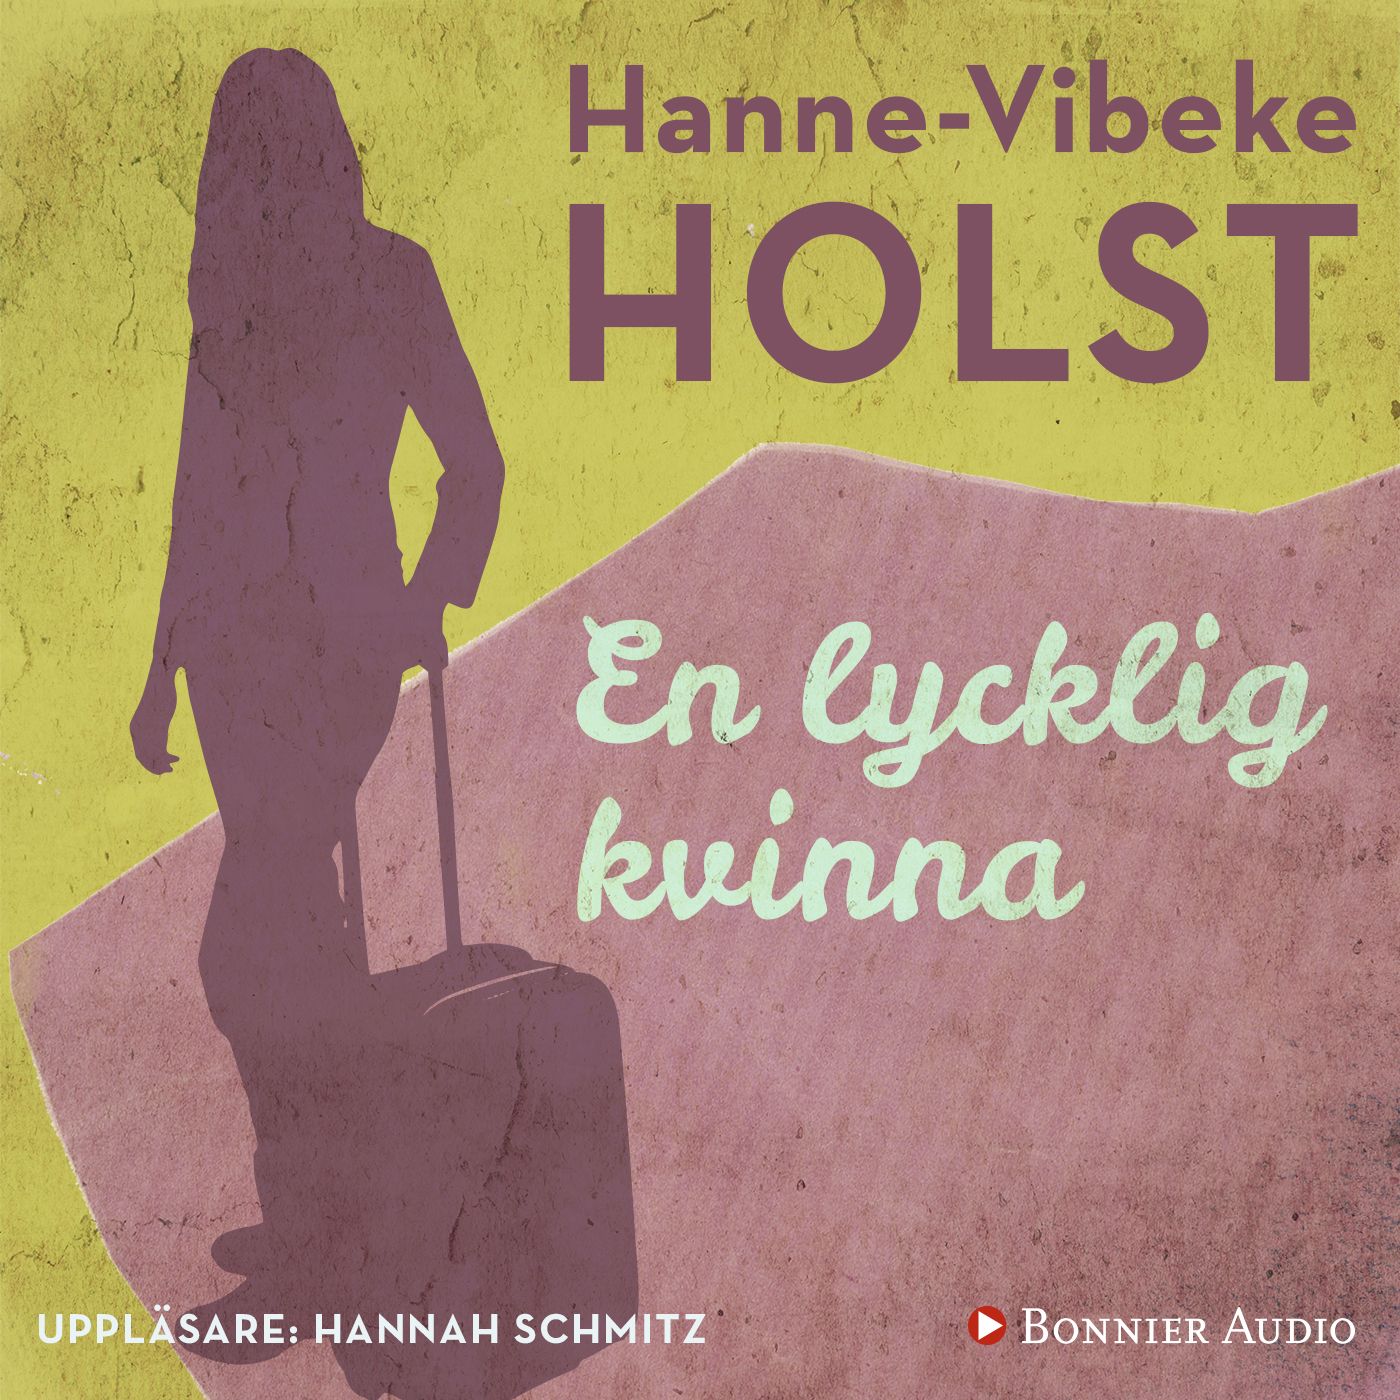 En lycklig kvinna, ljudbok av Hanne-Vibeke Holst